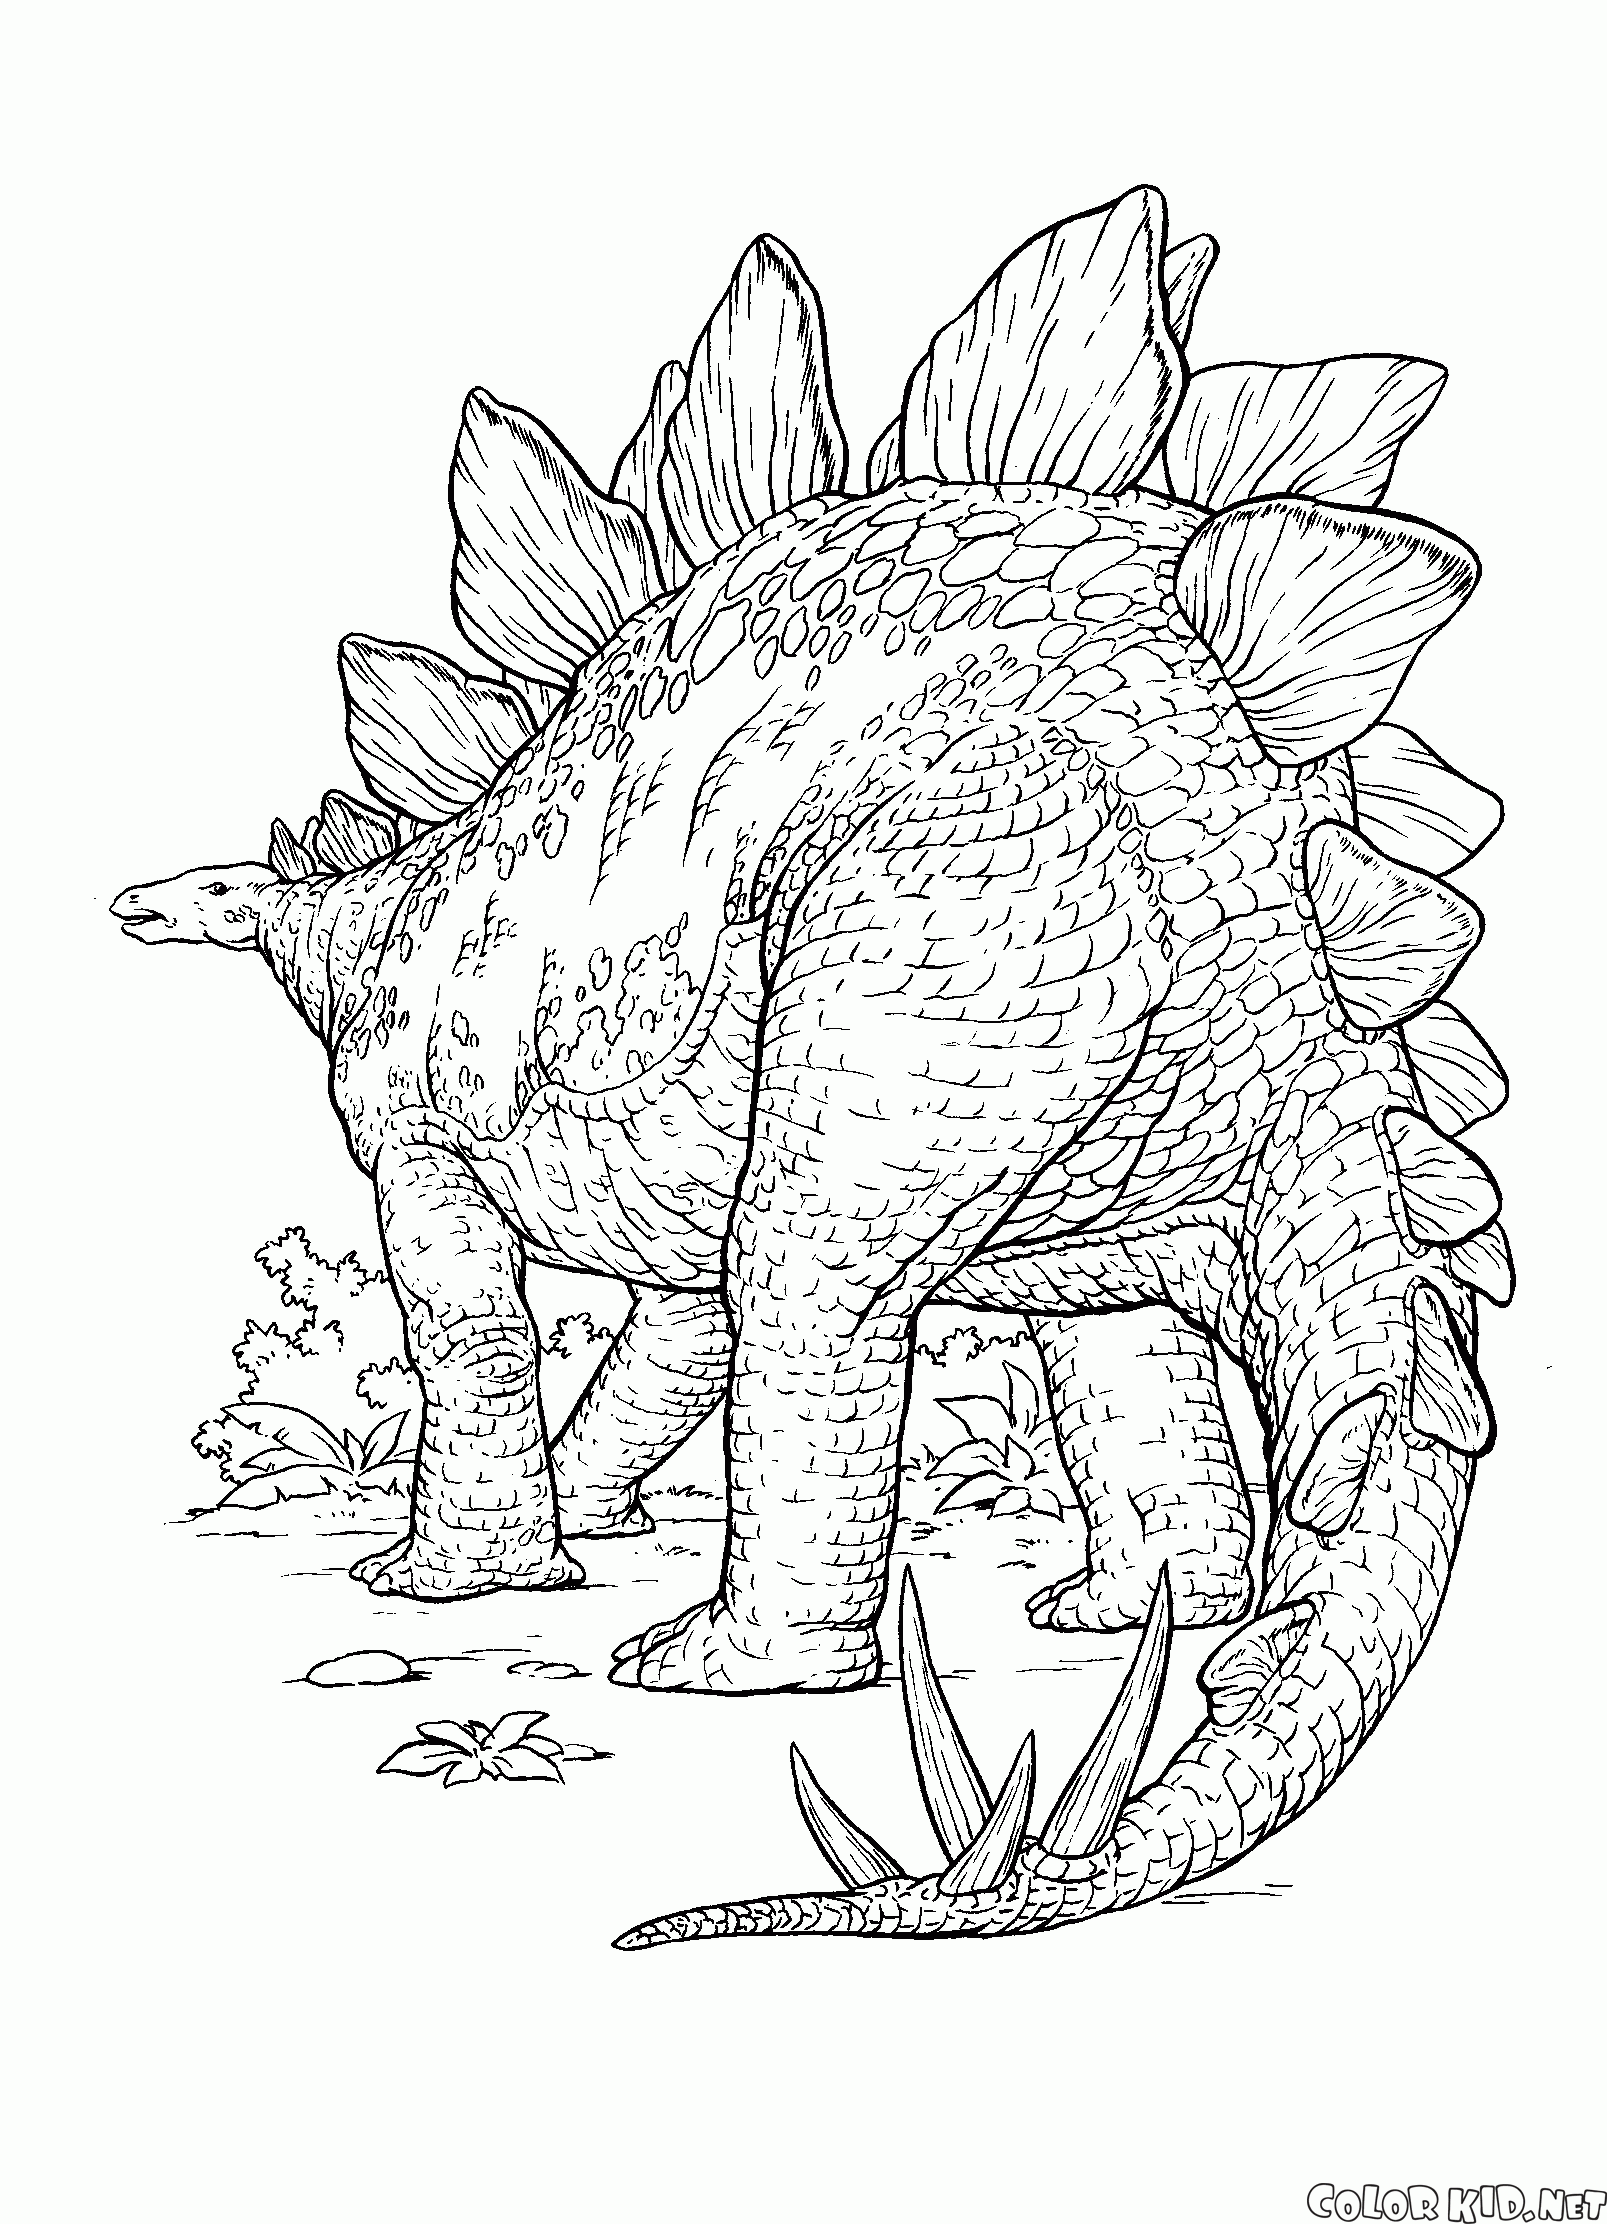 Dinossauro com espinhos afiados